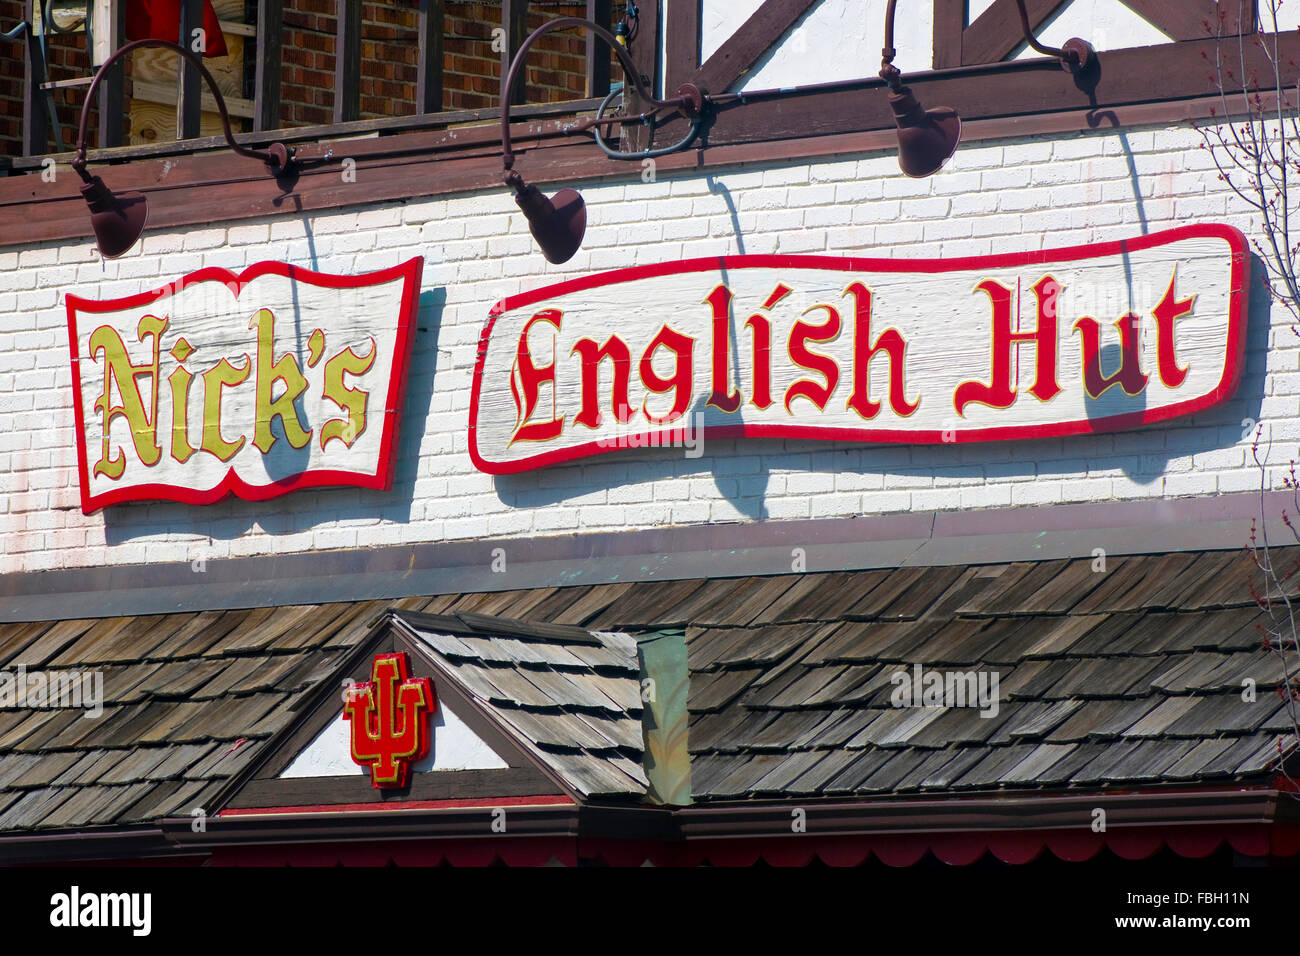 L'anglais Nick's Hut, bar et grill traditionnel dans la région de Bloomington, Indiana, bien connu de tous à l'Université d'Indiana et de la ville. Banque D'Images